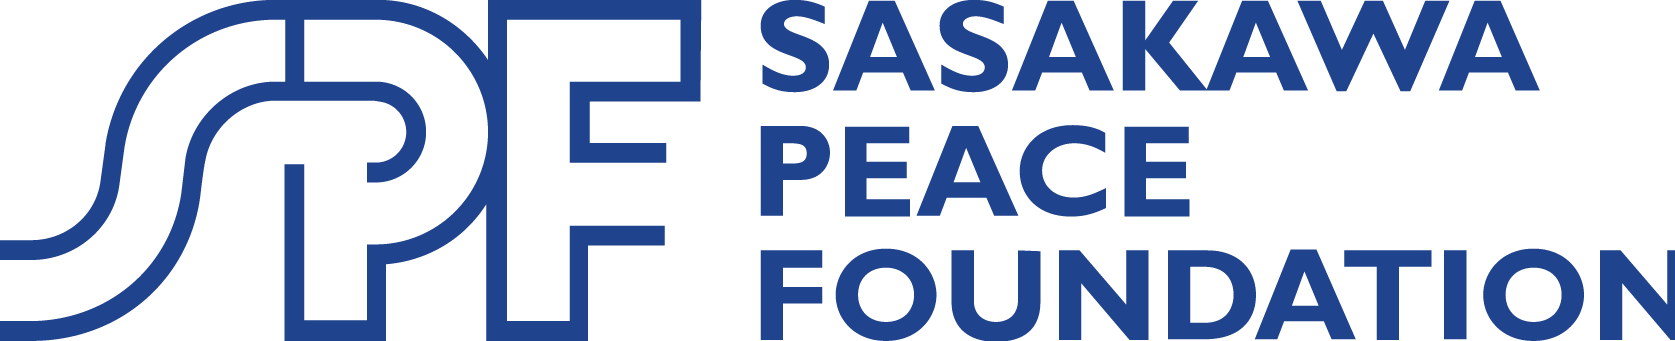 Sasakwa Peace Foundation